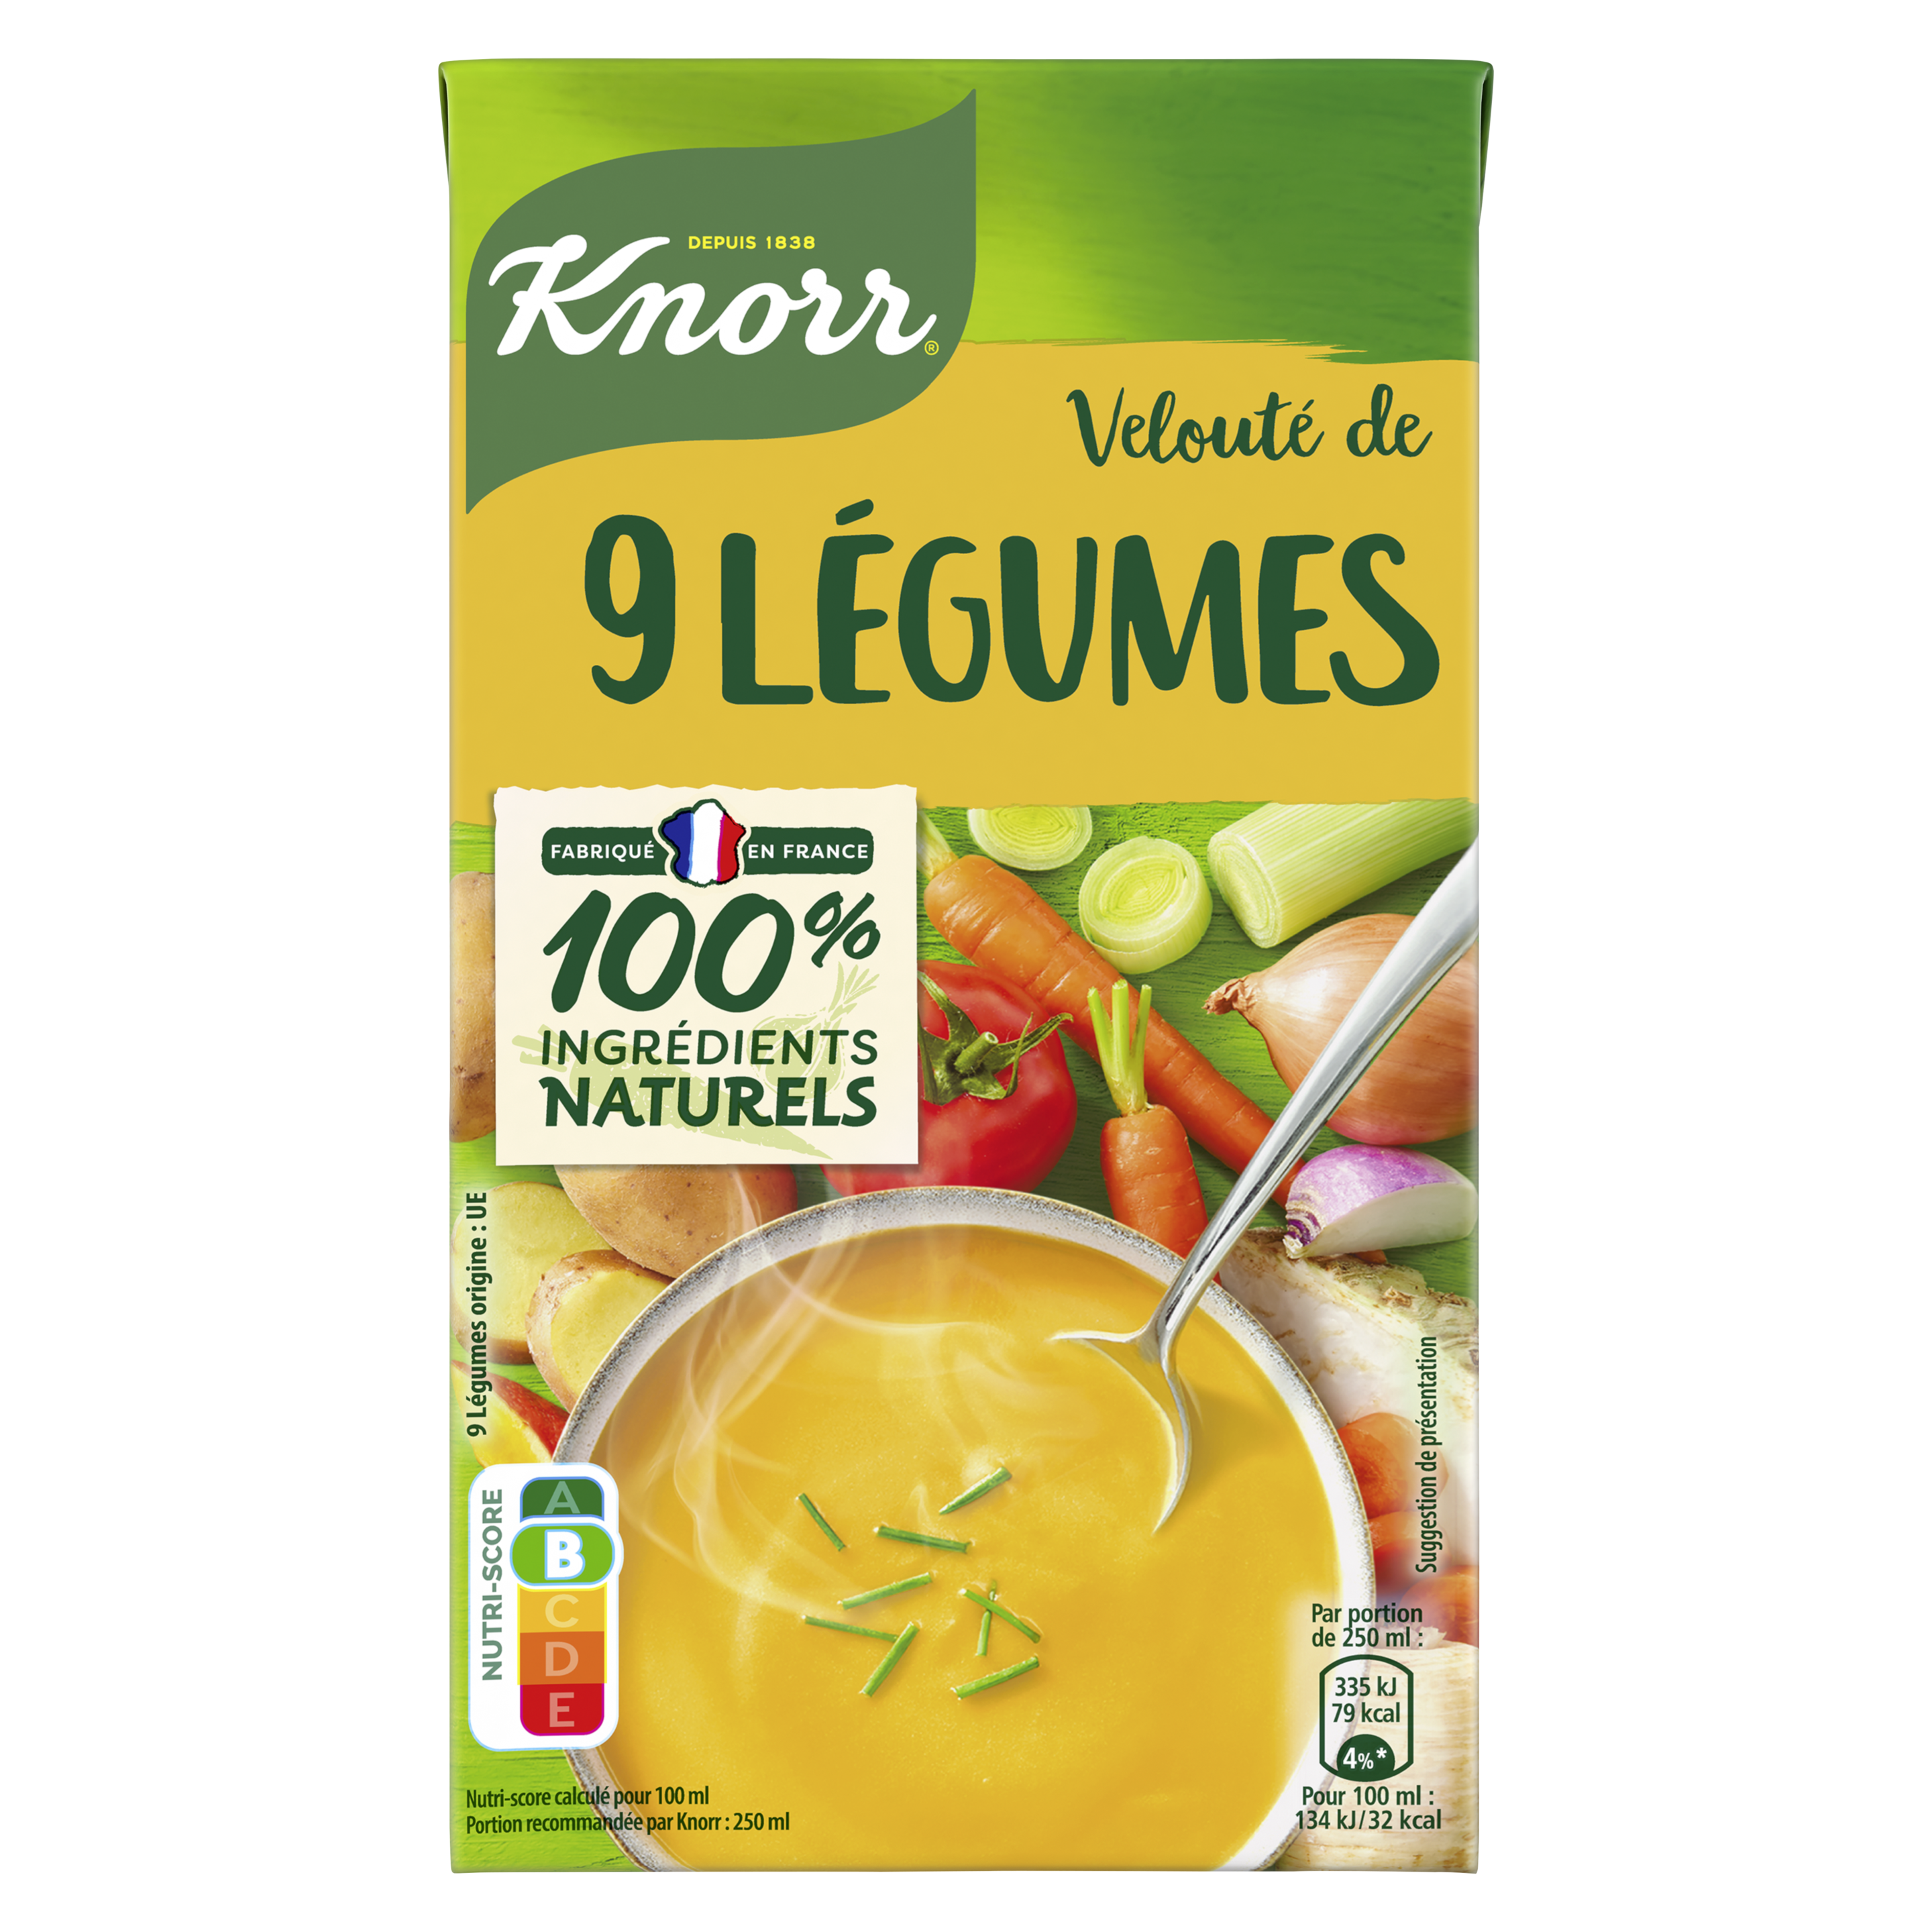 Soupe Velouté de 9 Légumes